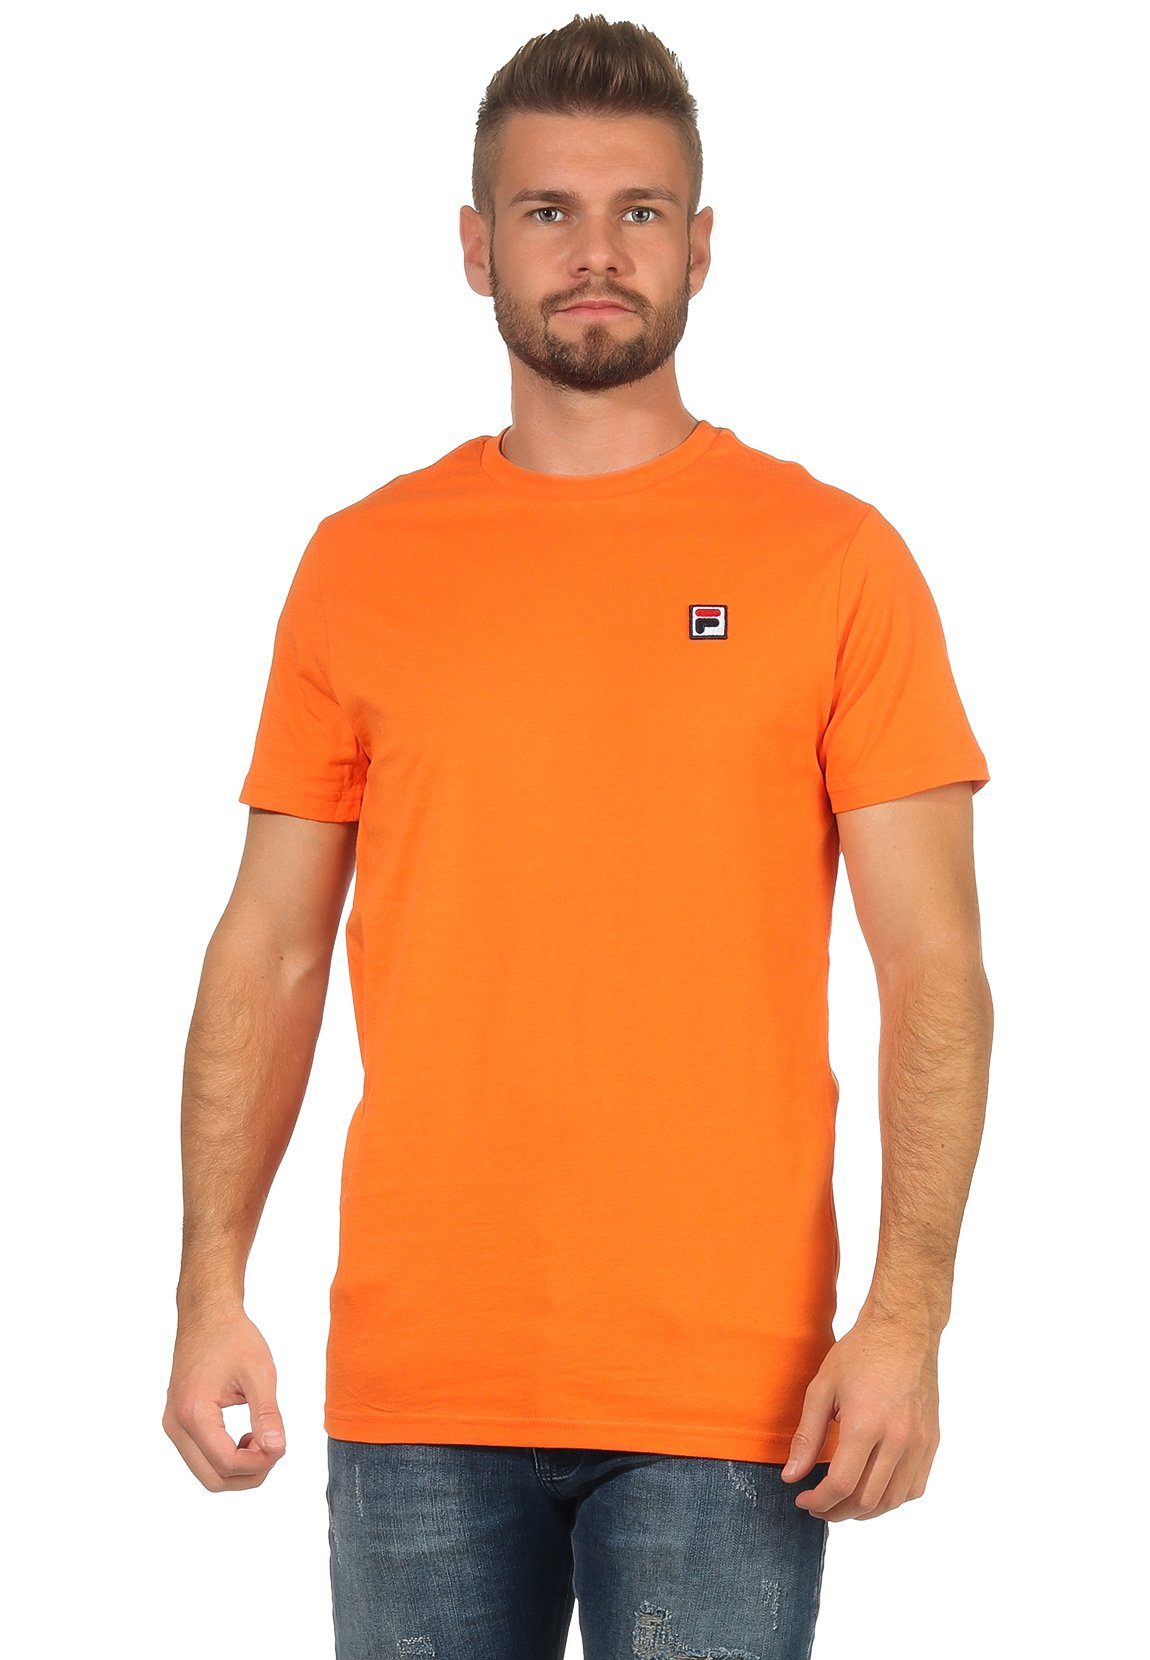 MEN SEAMUS Fila SS T-Shirt T-Shirt Herren Fila TEE 682393 Mandarin S62 Orange Orange